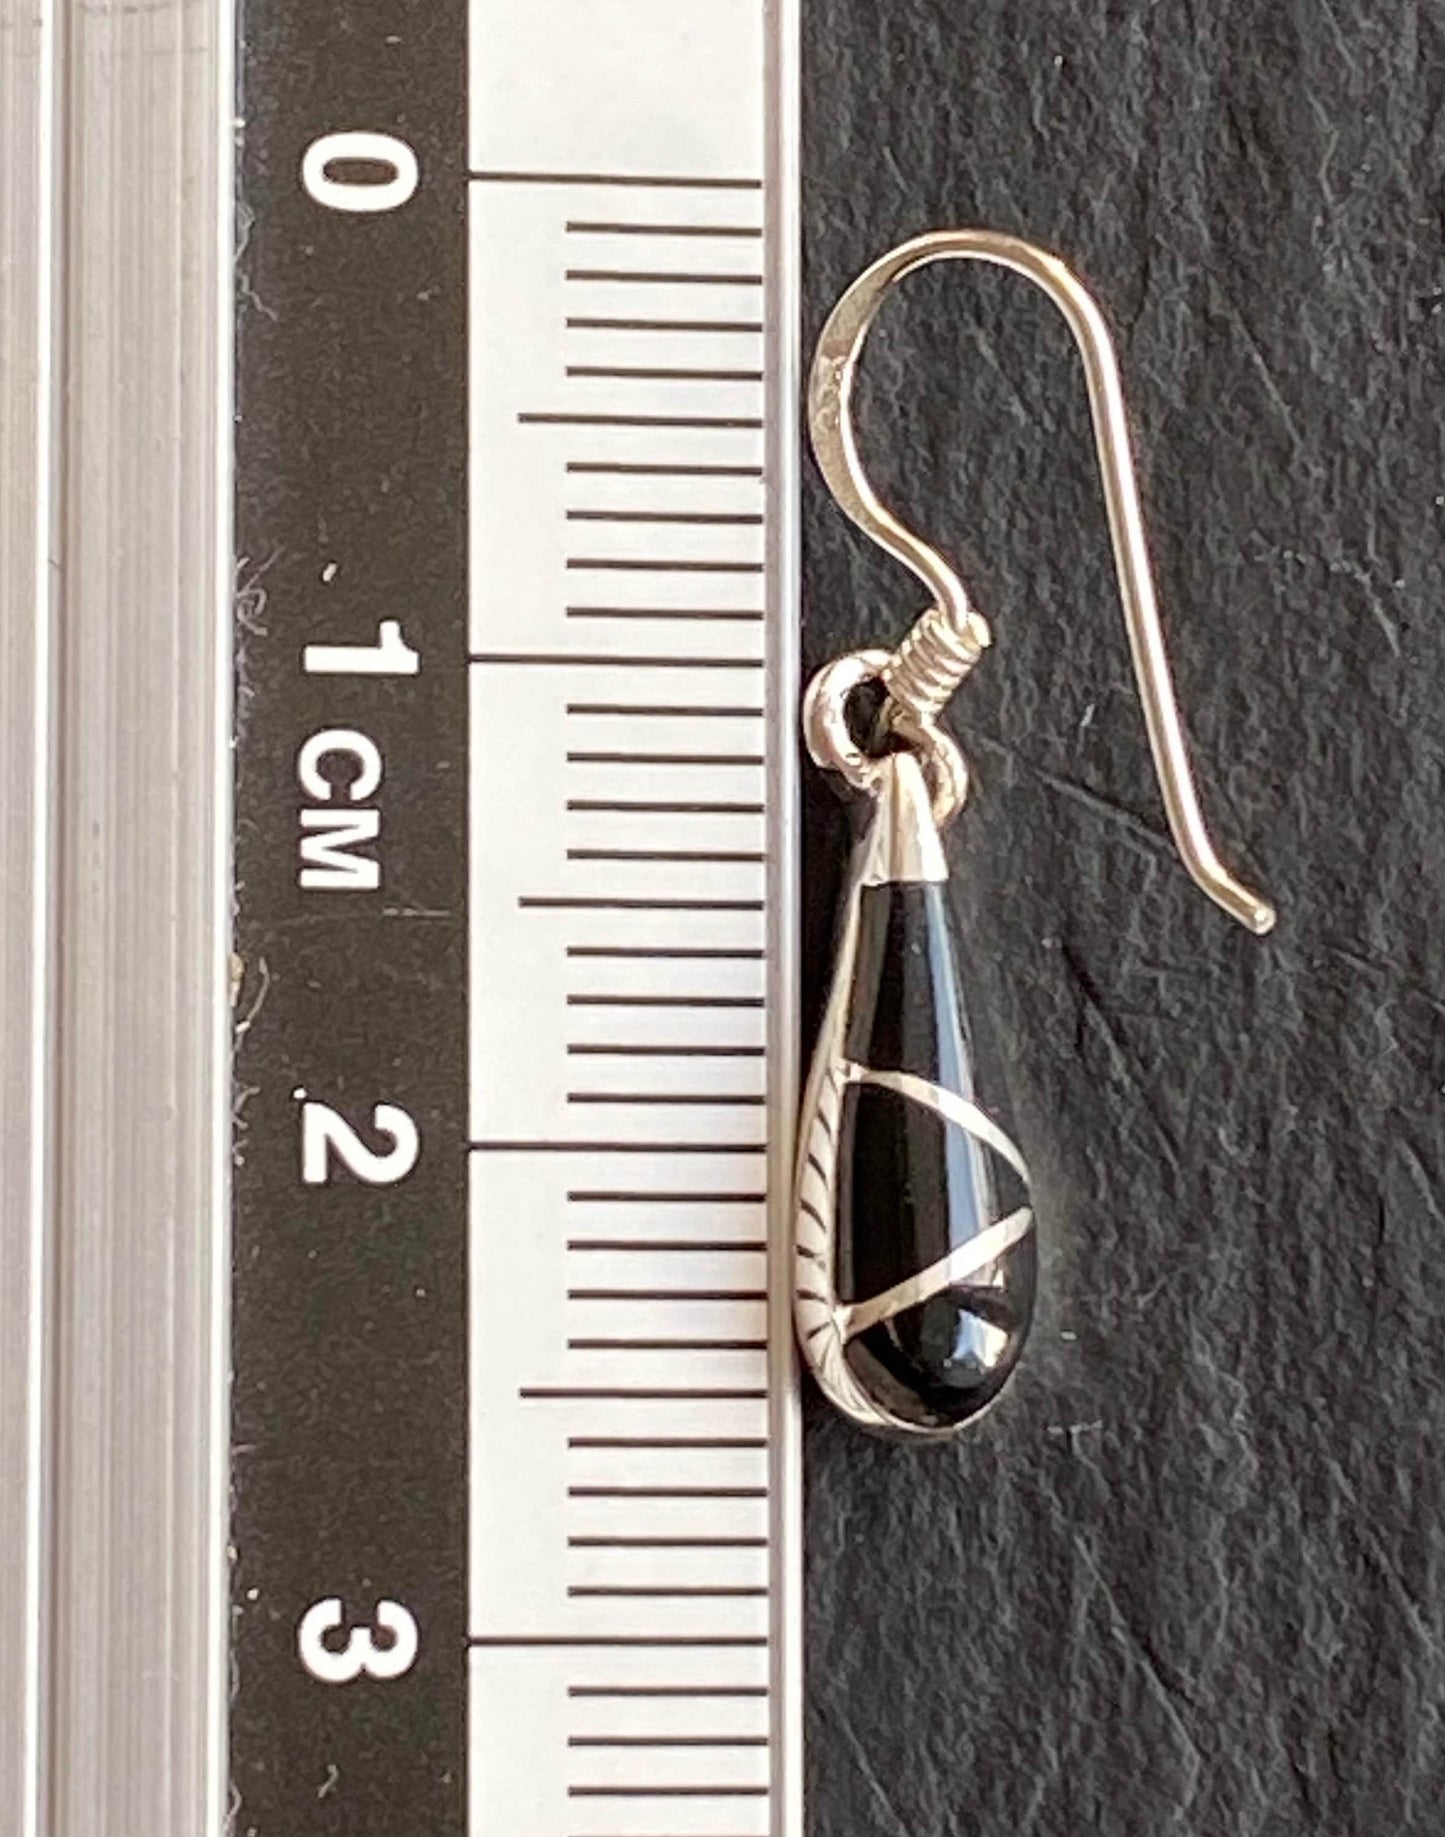 Onyx teardrop earrings Sterling Silver 925 - TSE067